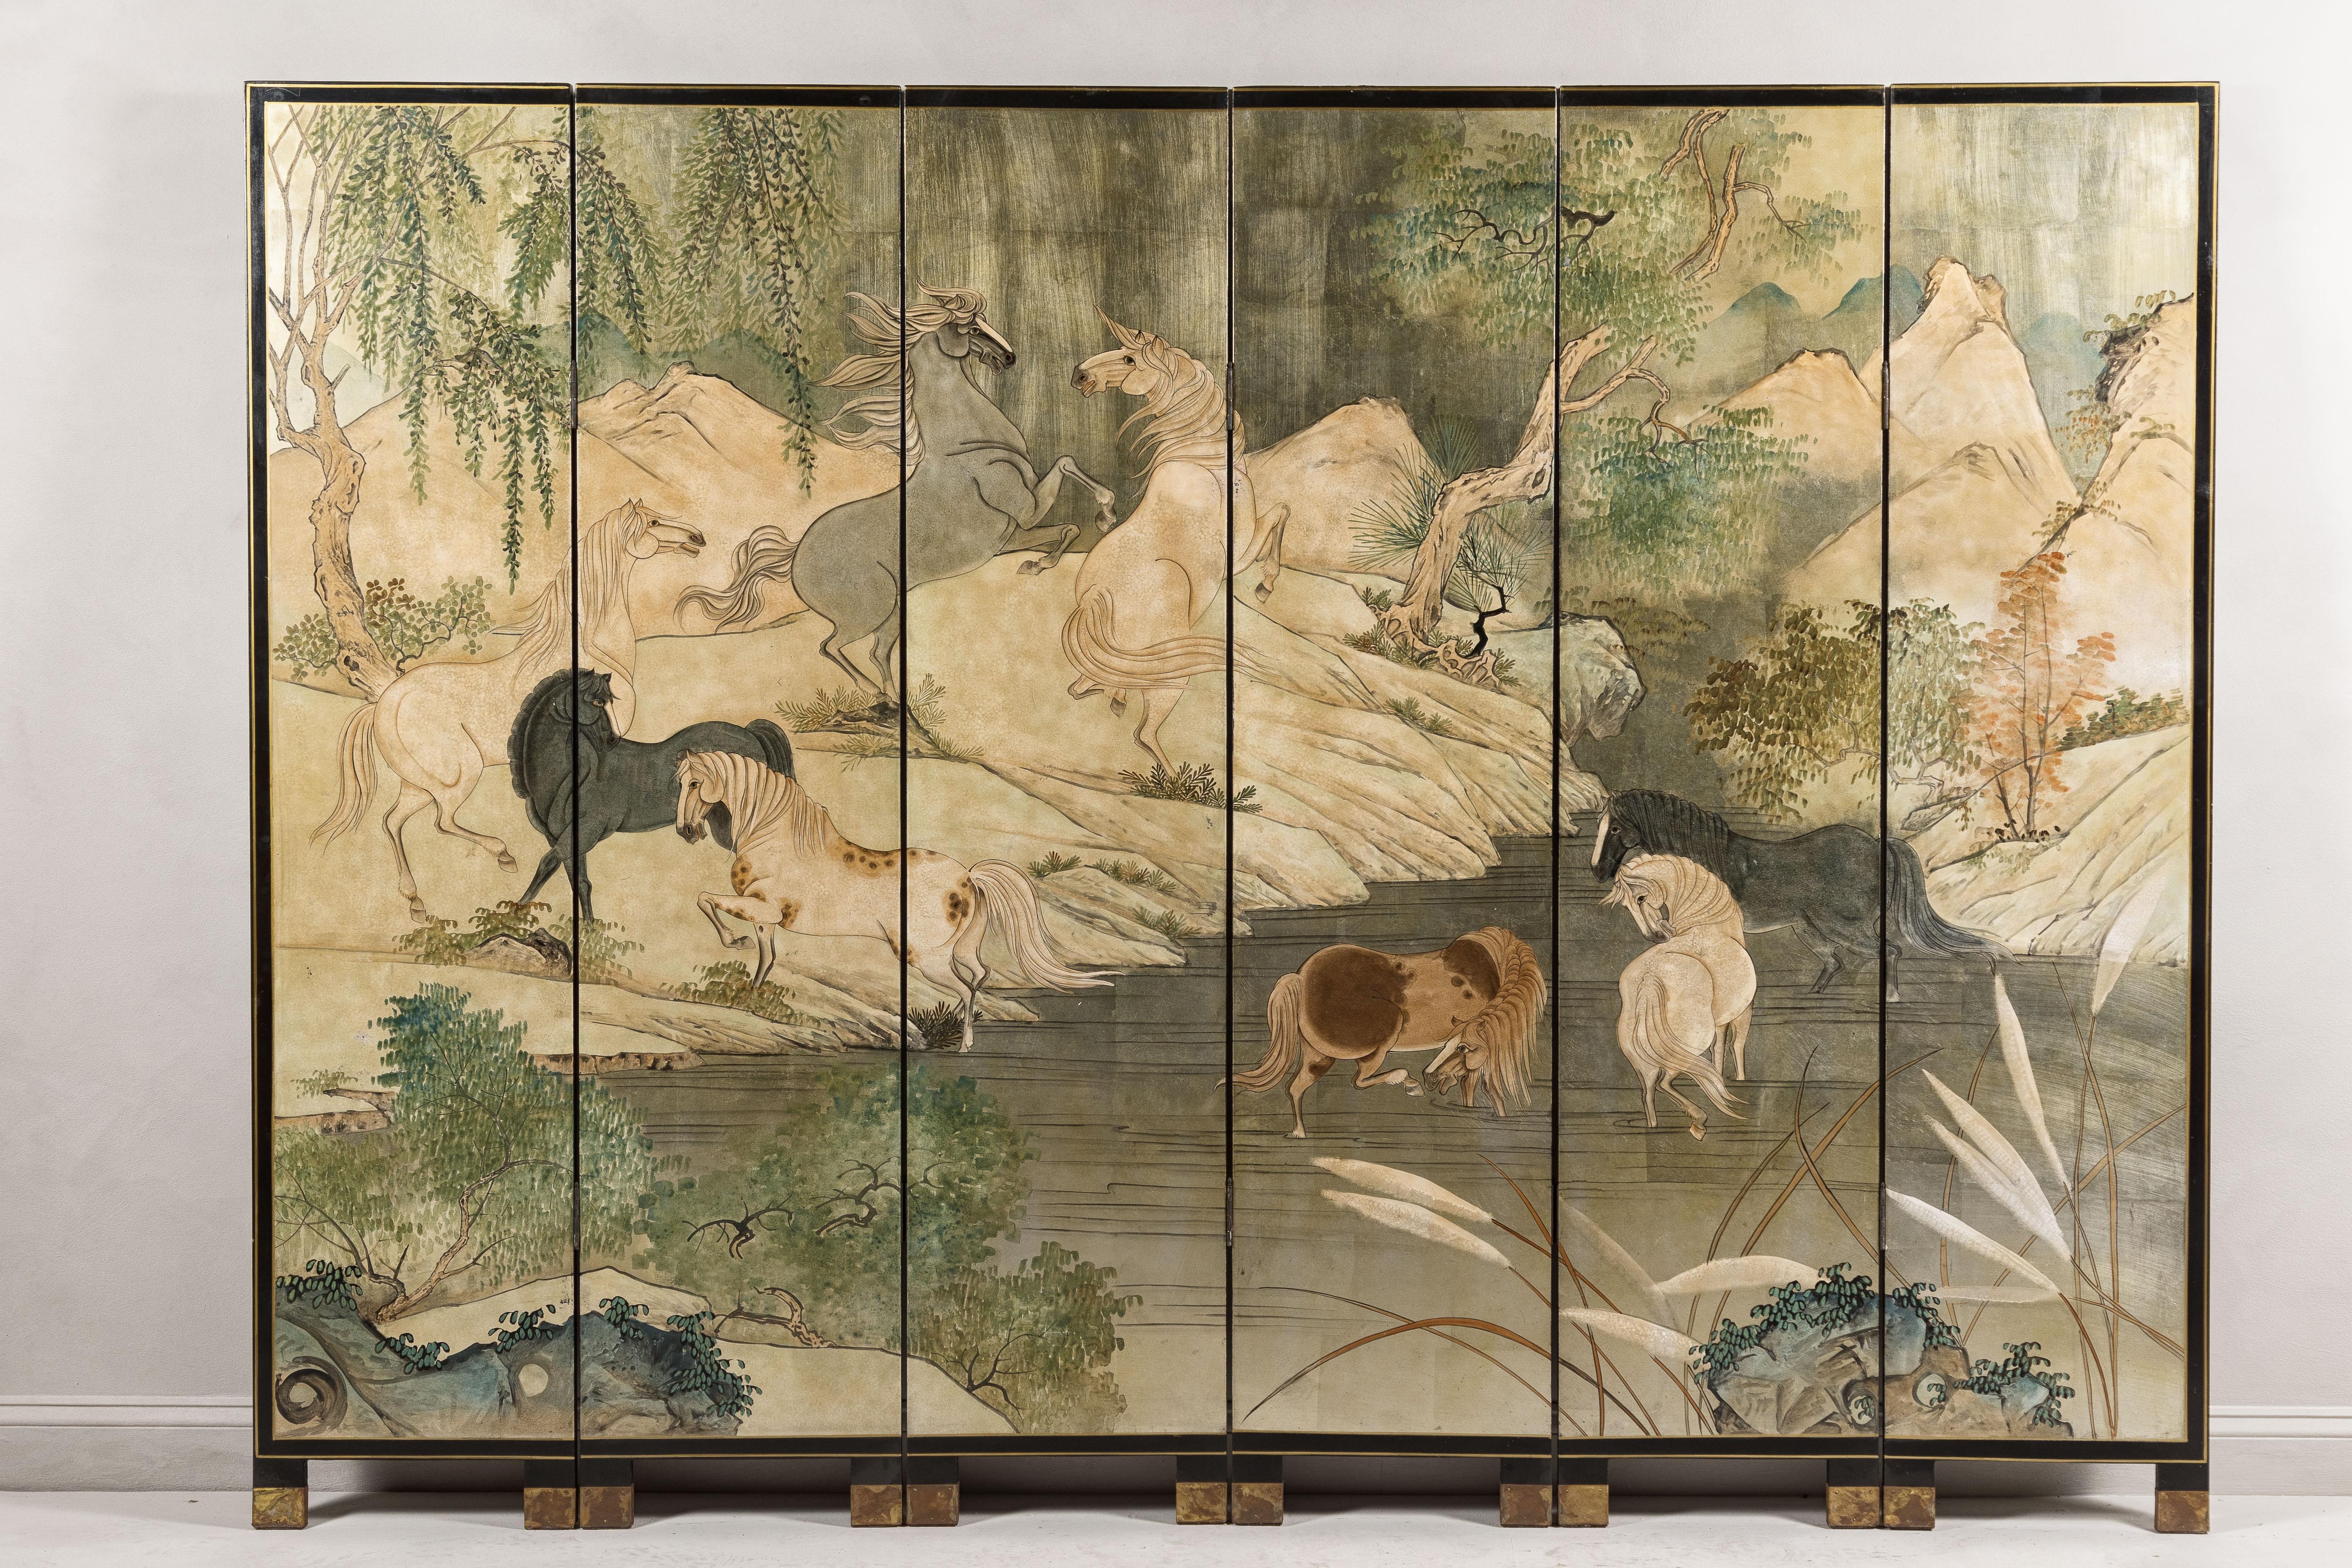 Japanischer Vintage-Faltschirm mit sechs vergoldeten Tafeln, die eine Landschaft und mythische Pferde zeigen. Dieser japanische Sechspaneel-Faltwandschirm ist eine prächtige Darstellung vergoldeter Kunstfertigkeit und zeigt eine lebendige